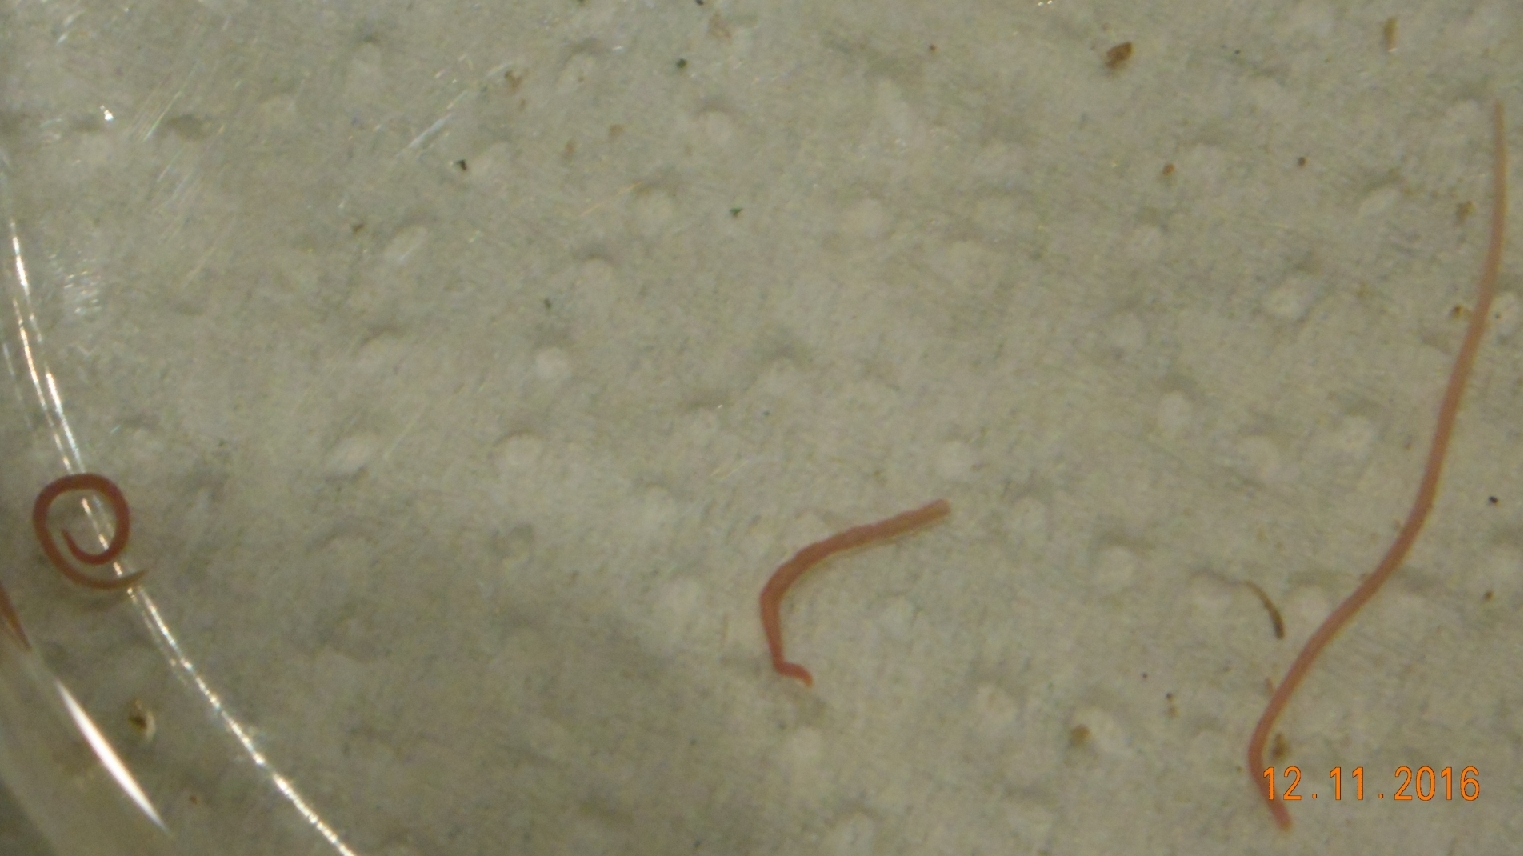 По стенкам аквариума ползают маленькие белые червячки